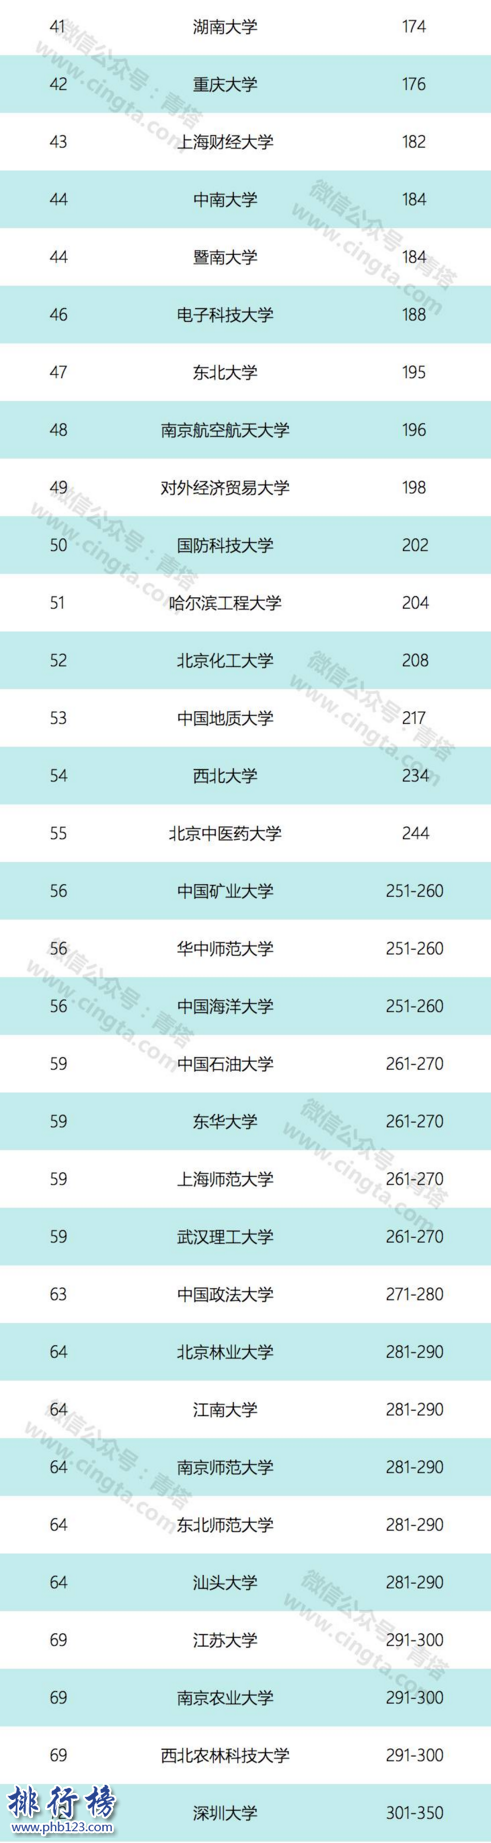 2018QS亞洲大學排名:南洋理工登頂,清華第6北大第9